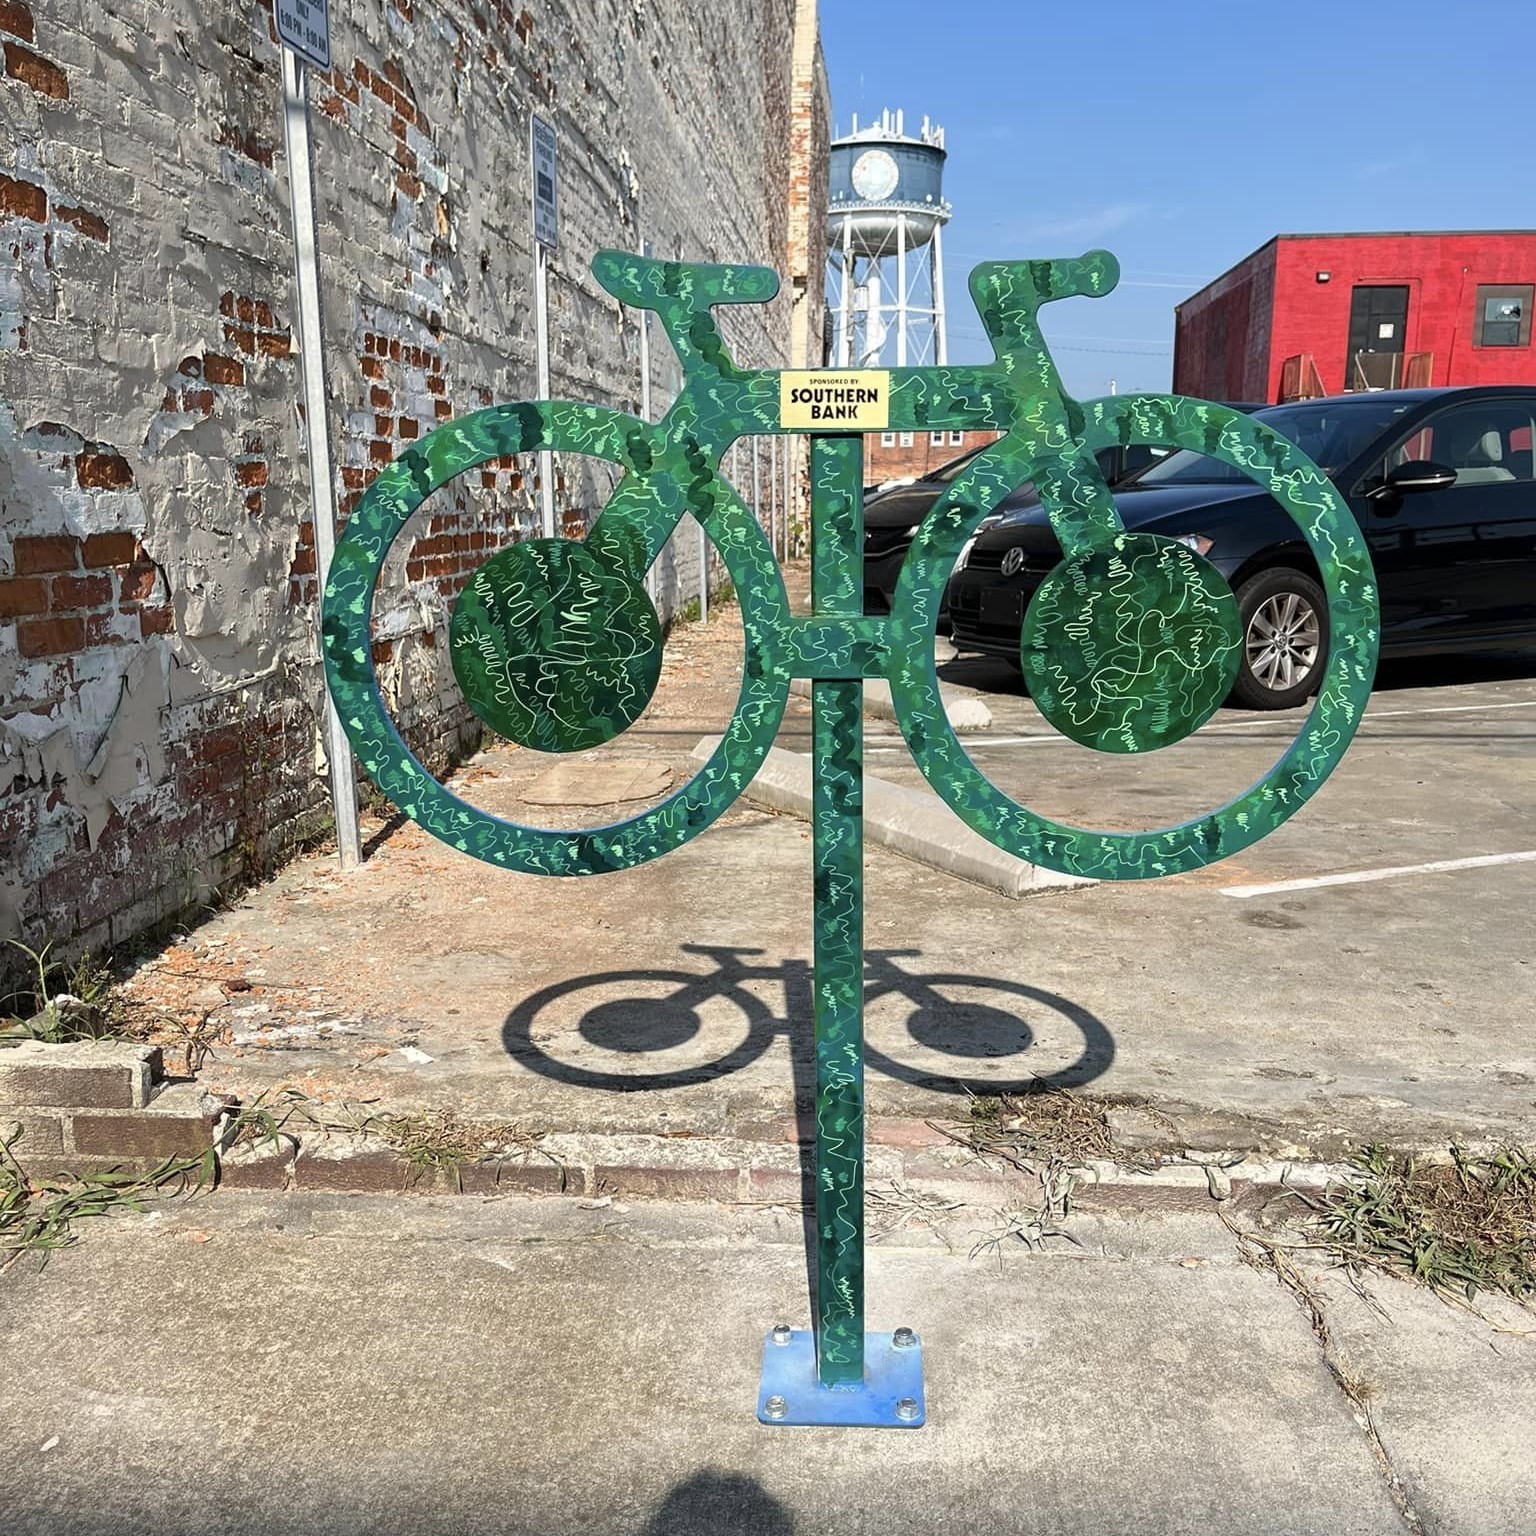 Public art bike racks debut in Downtown Elizabeth City